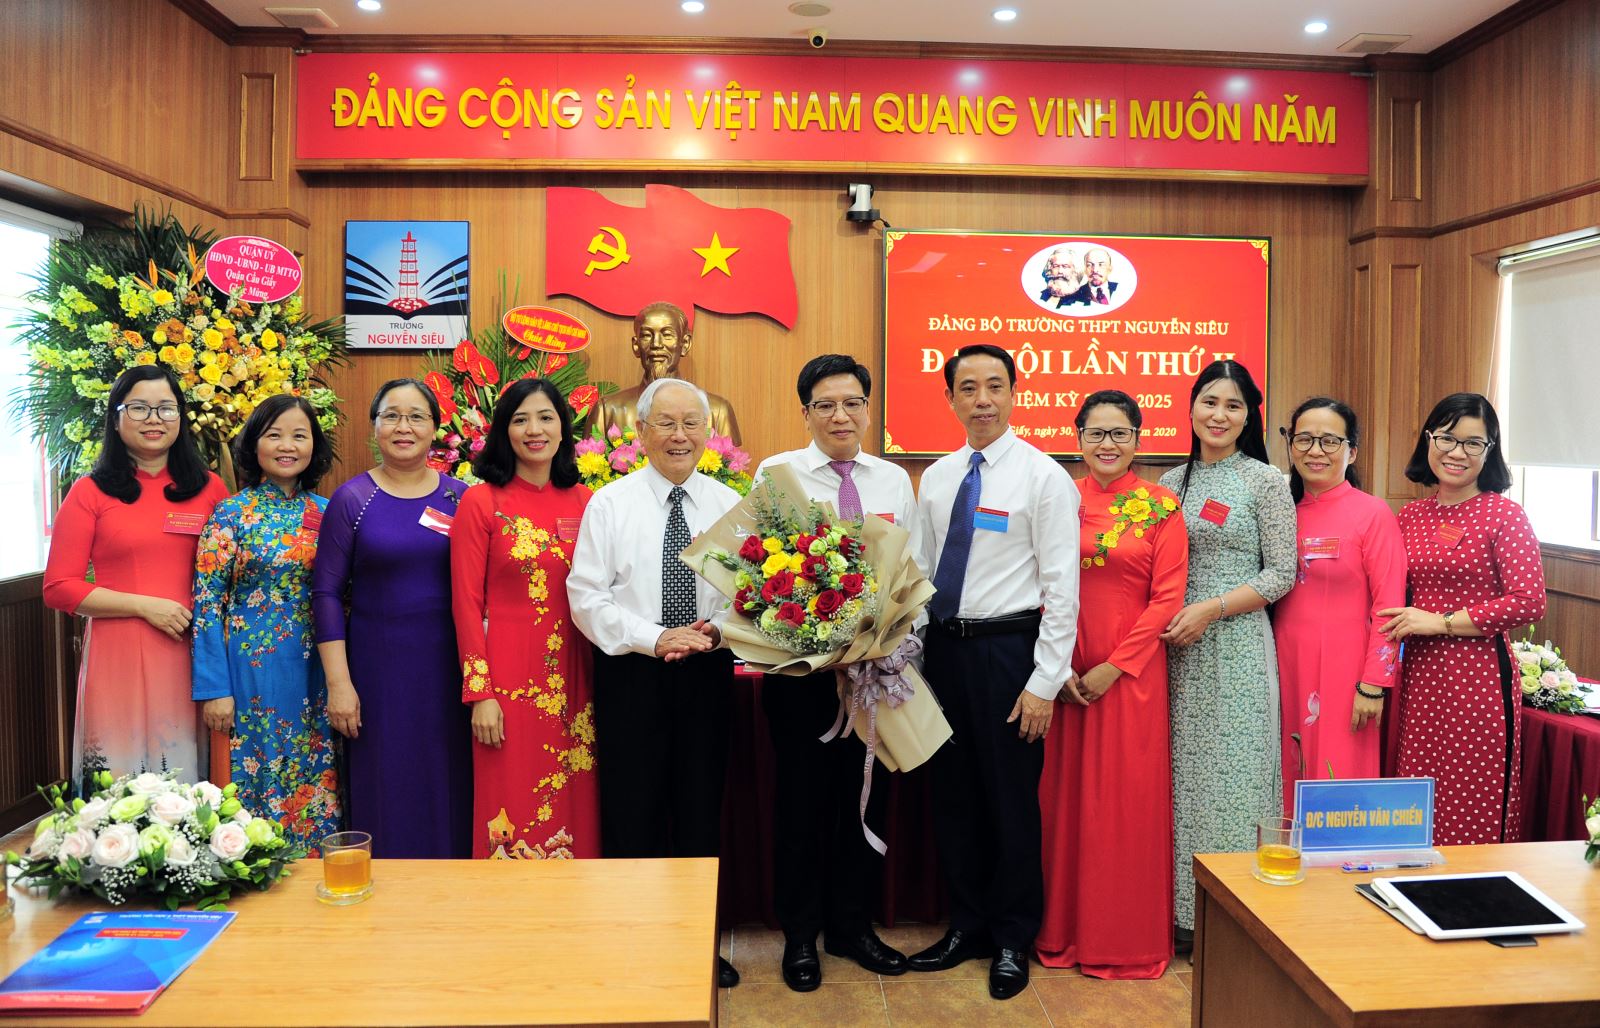 Đồng chí Nguyễn Vĩnh Hạnh là Bí thư Đảng bộ nhiệm kỳ 2020-2025